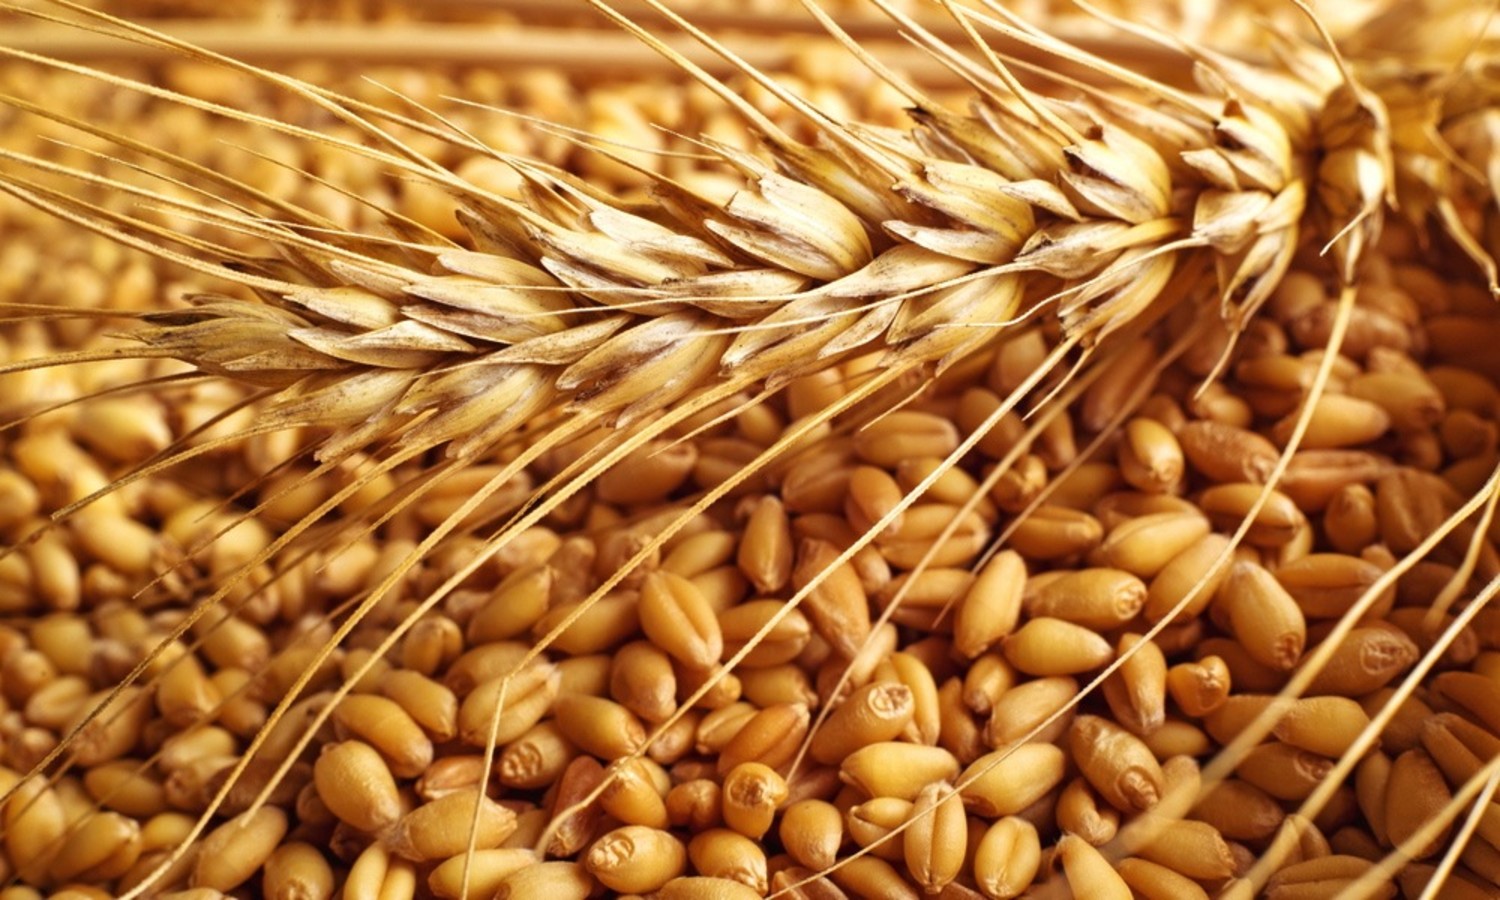   المركزى للتعبئة العامة والإحصاء: محصول القمح زاد فى 2015 بنسبة 3.5٪